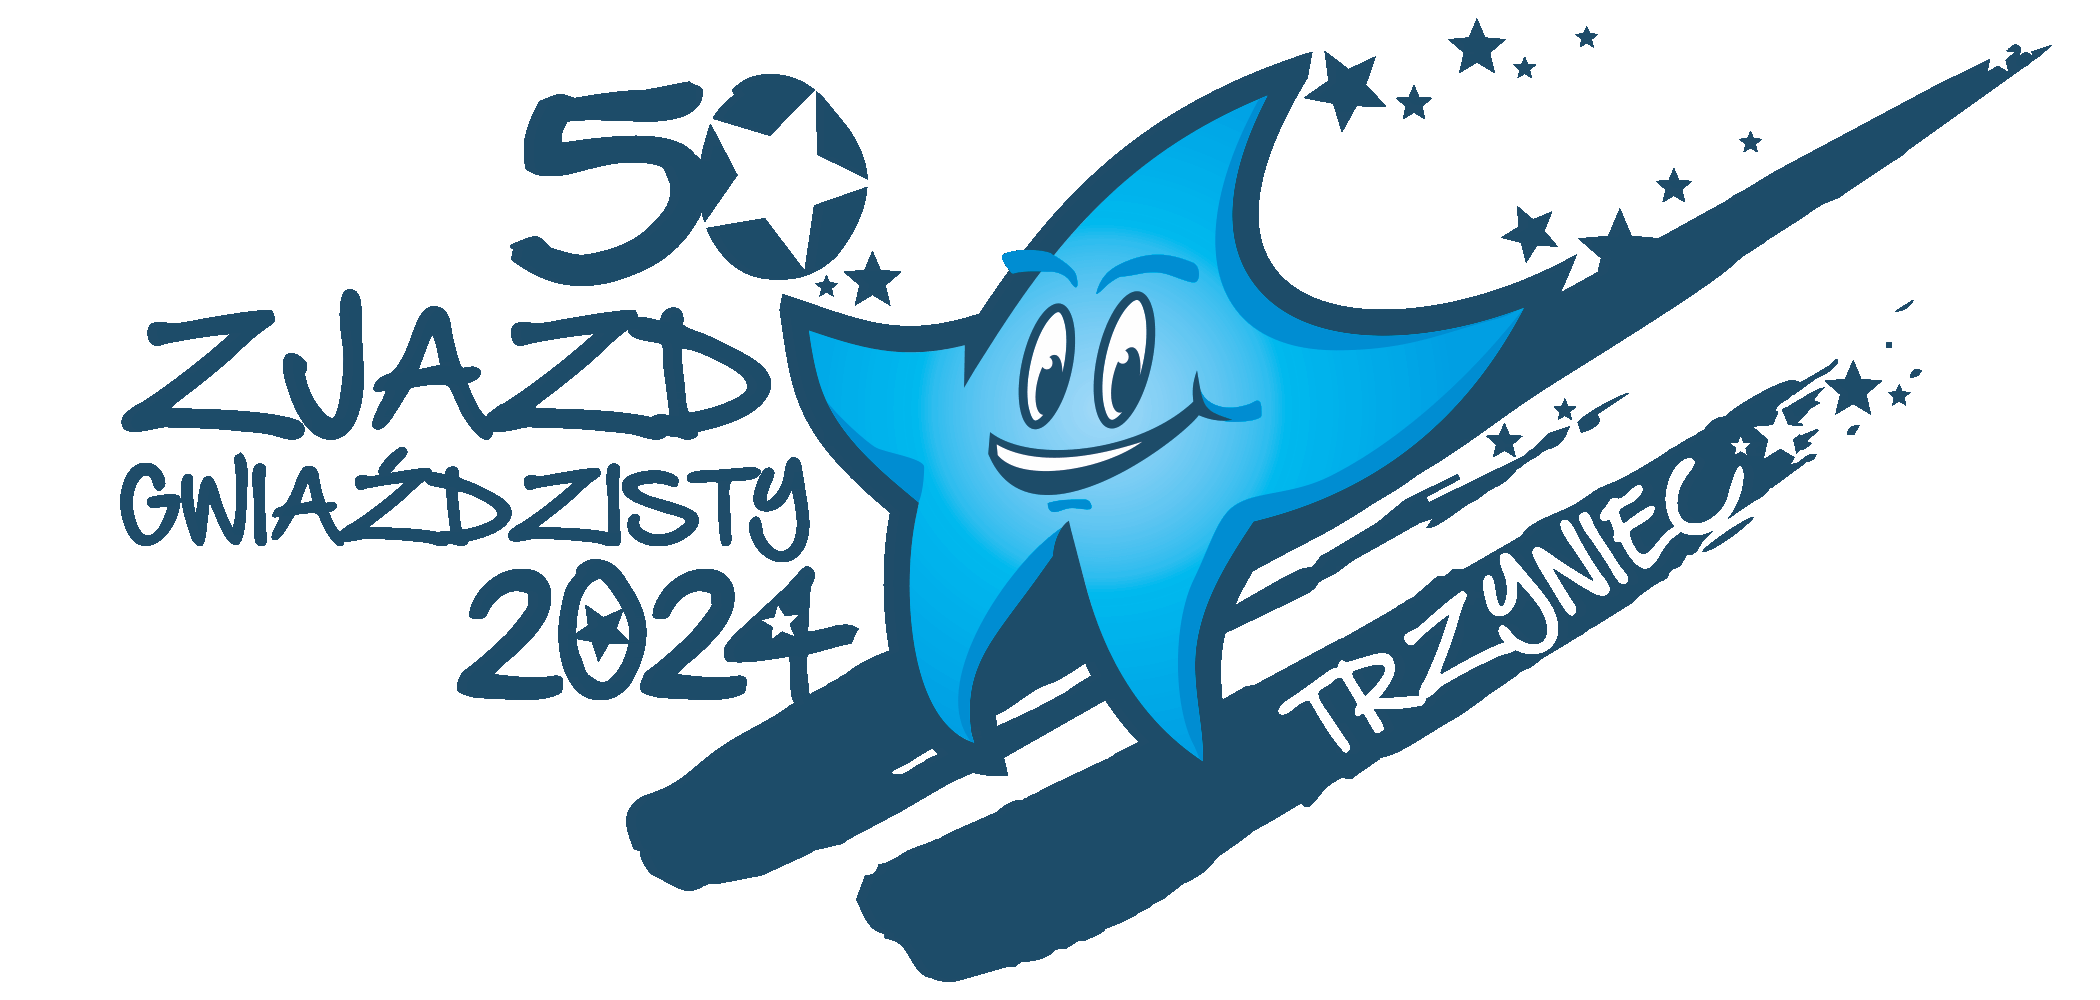 logo Zjazd Gwiaździsty 2024